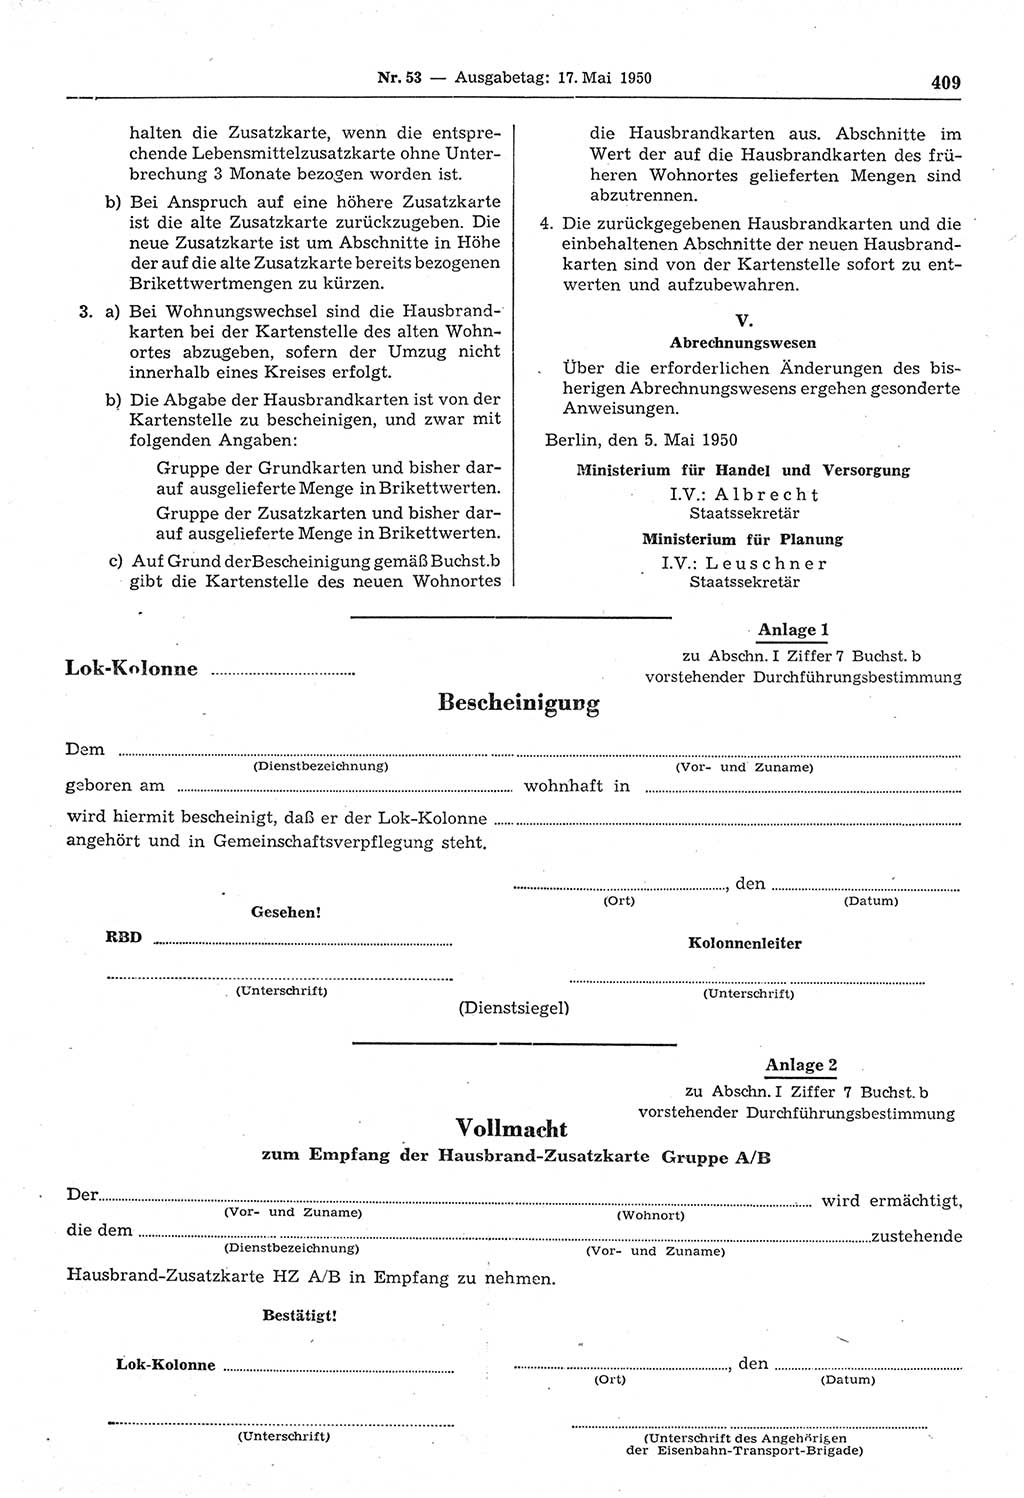 Gesetzblatt (GBl.) der Deutschen Demokratischen Republik (DDR) 1950, Seite 409 (GBl. DDR 1950, S. 409)